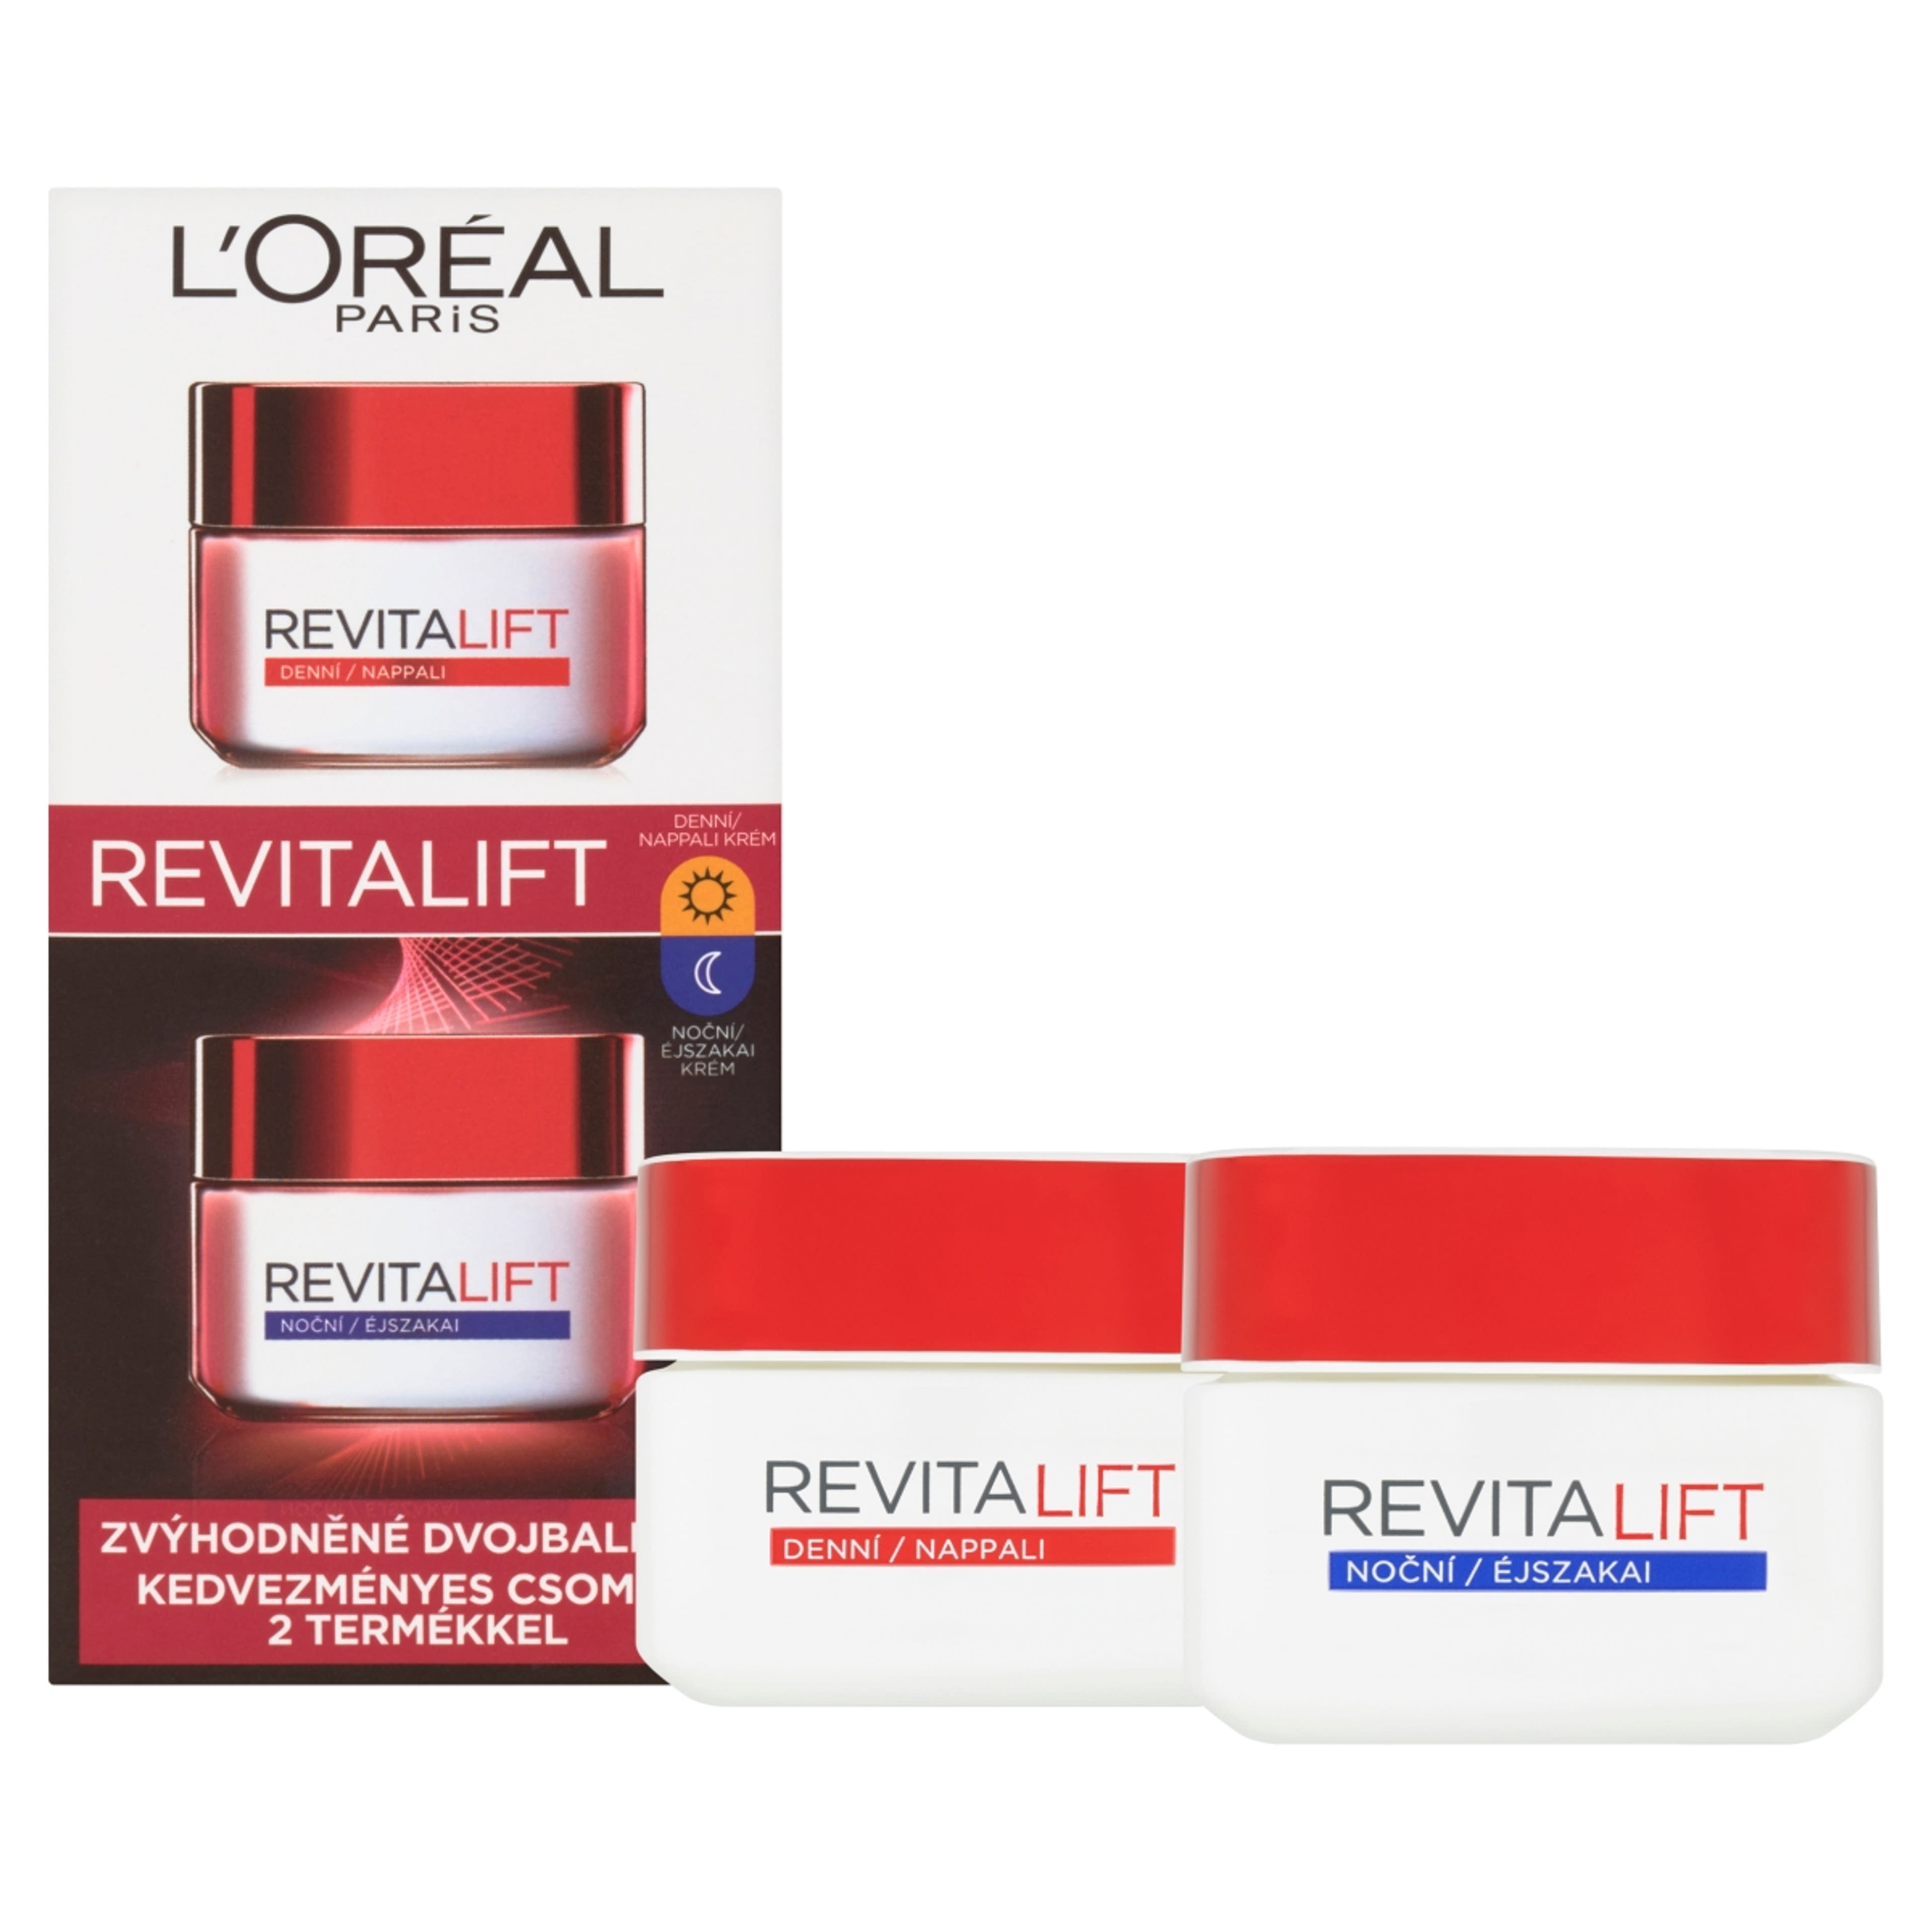 L'Oréal Paris Revitalift nappali és éjszakai krém csomag - 100 ml-2